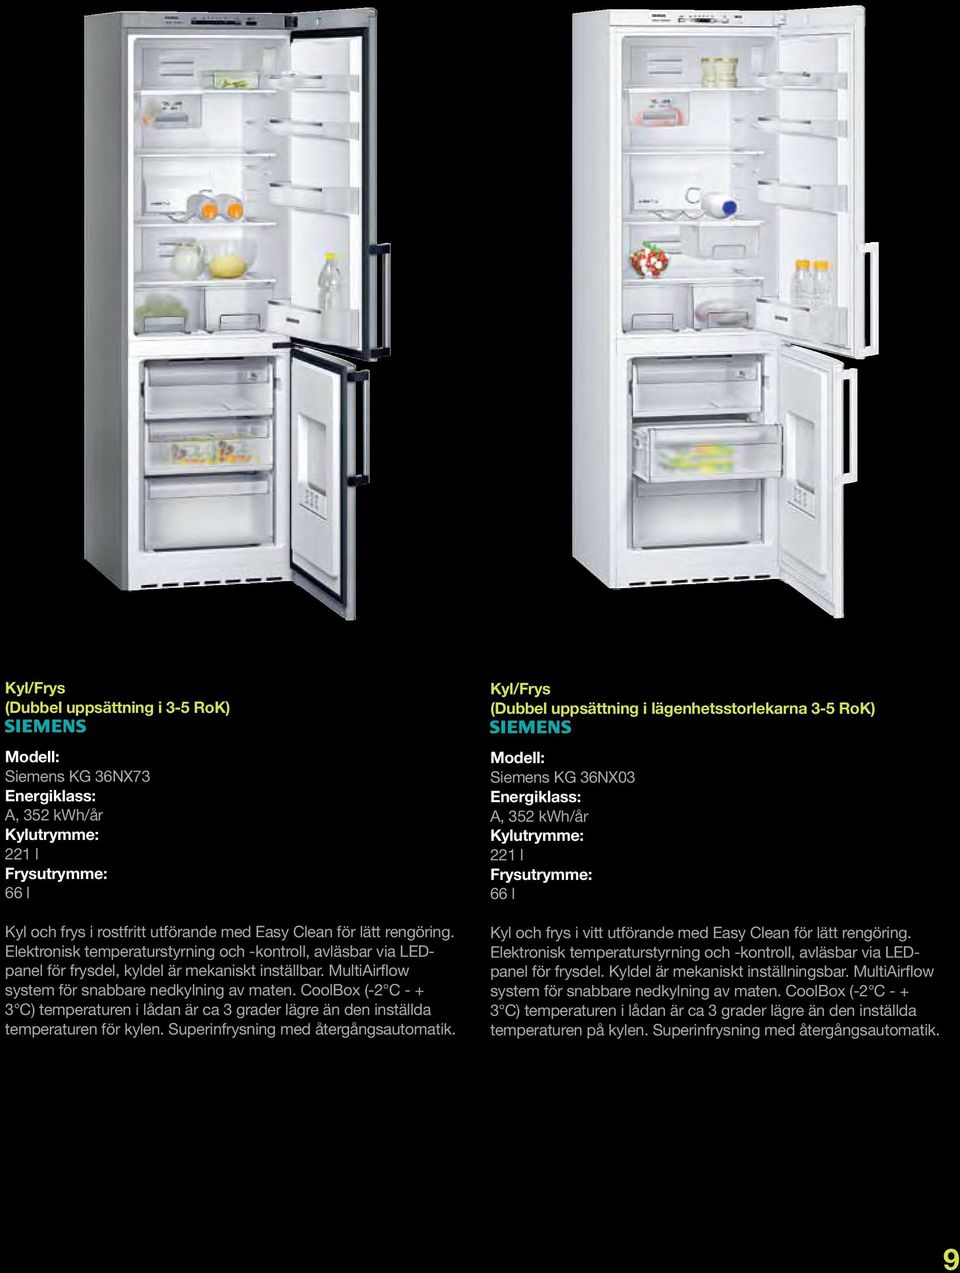 MultiAirflow system för snabbare nedkylning av maten. CoolBox (-2 C - + 3 C) temperaturen i lådan är ca 3 grader lägre än den inställda temperaturen för kylen. Superinfrysning med återgångsautomatik.